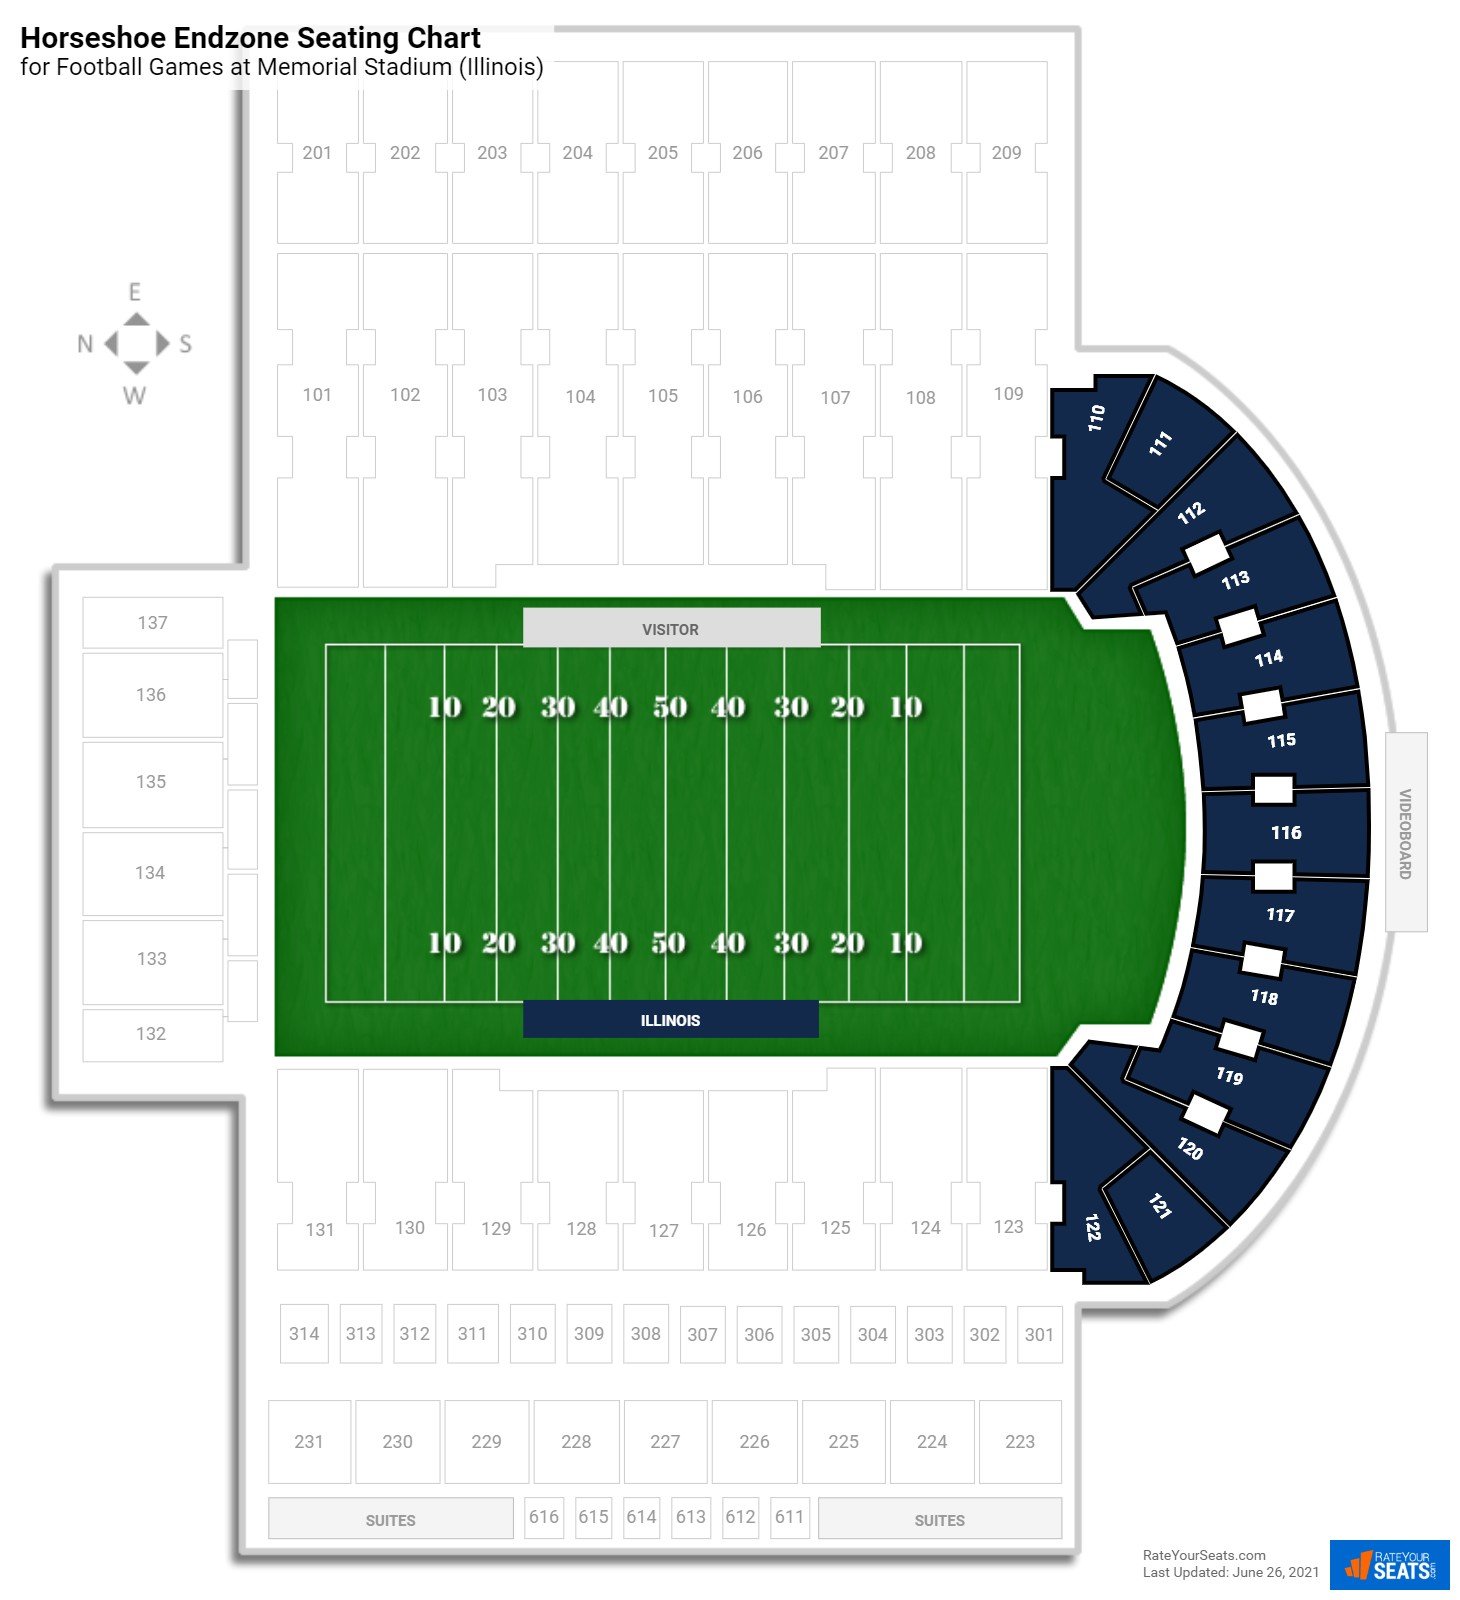 Memorial Stadium (Illinois) Horseshoe Endzone - RateYourSeats.com